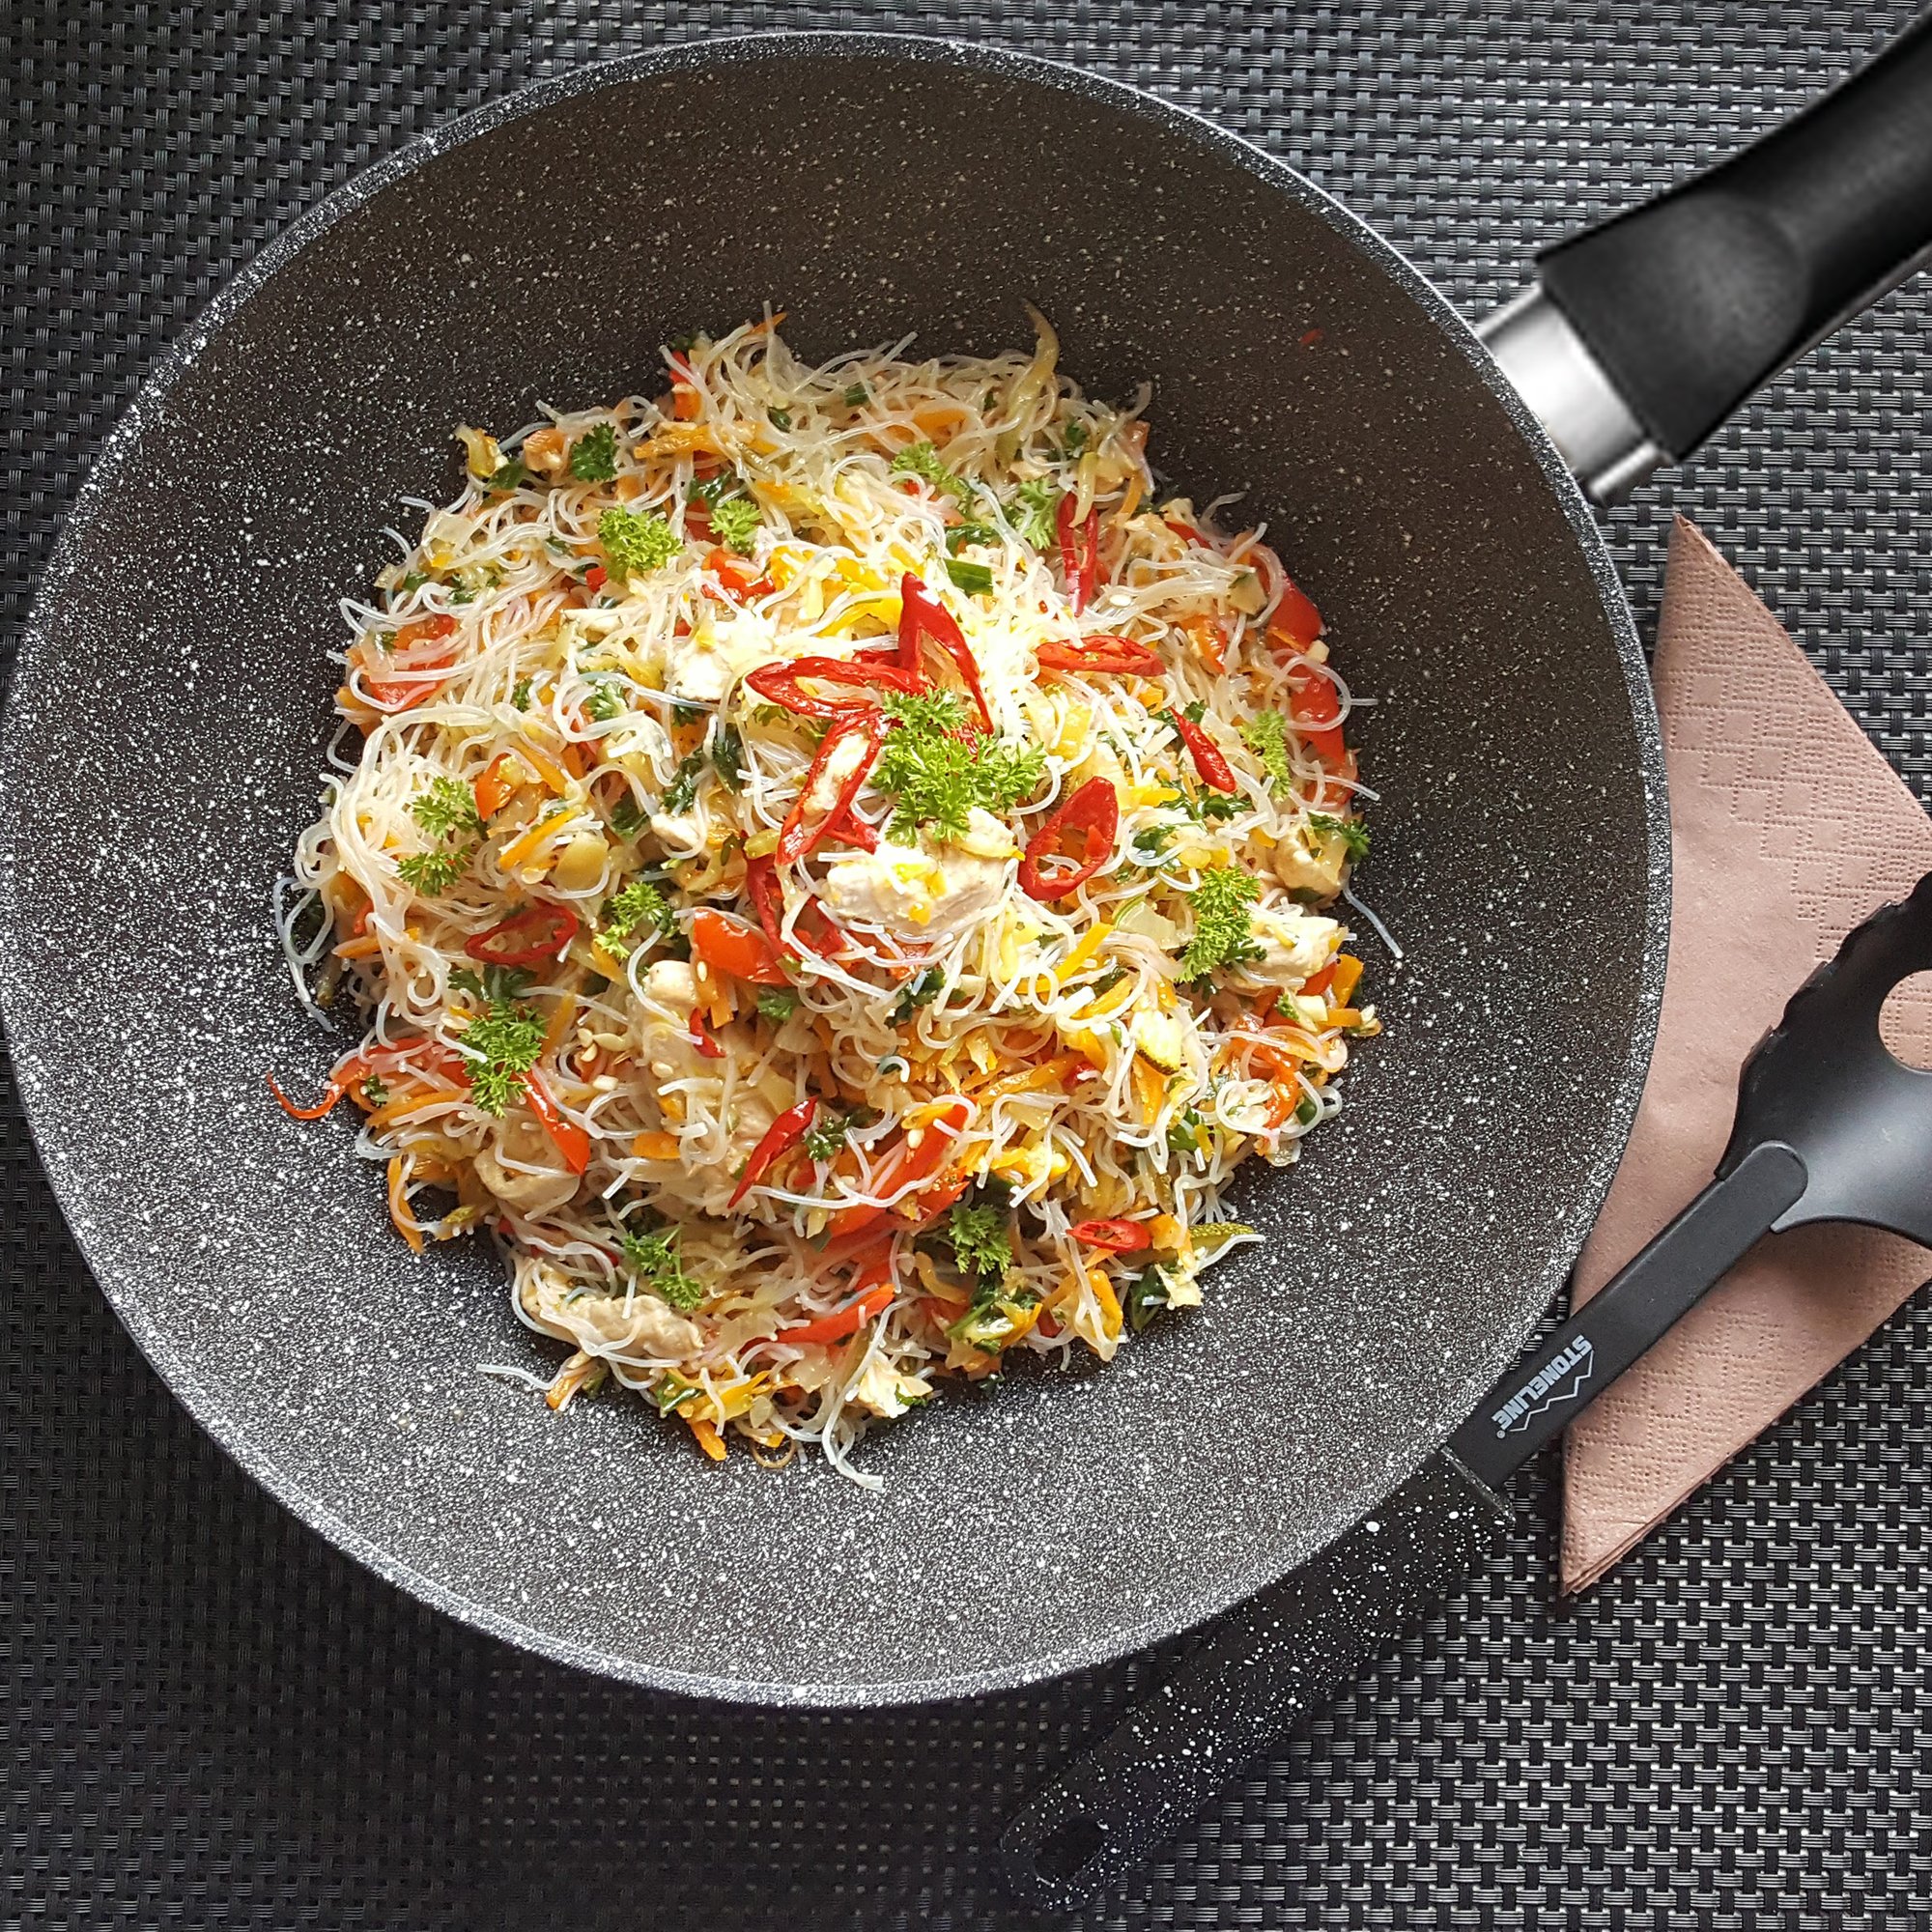 STONELINE® poêle wok 30cm, Made in Germany, wok antiadhésif, convient pour induction